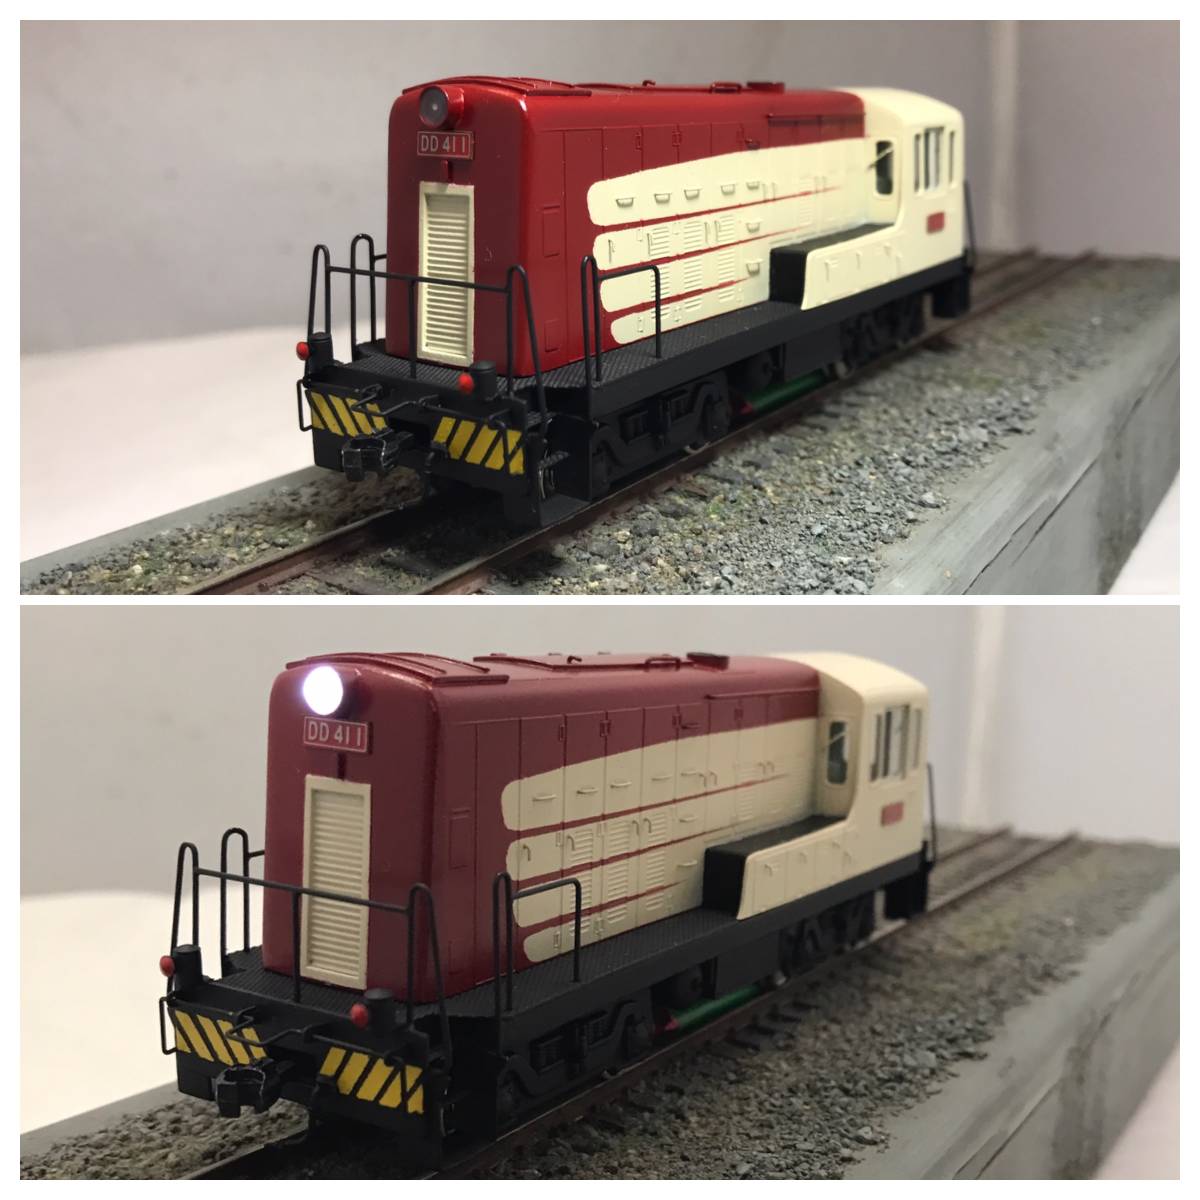 国鉄試作機関車DD41 試作機塗装 ホビーモデルキットベース 1/80 16.5mm 当工房特製完成品_画像4